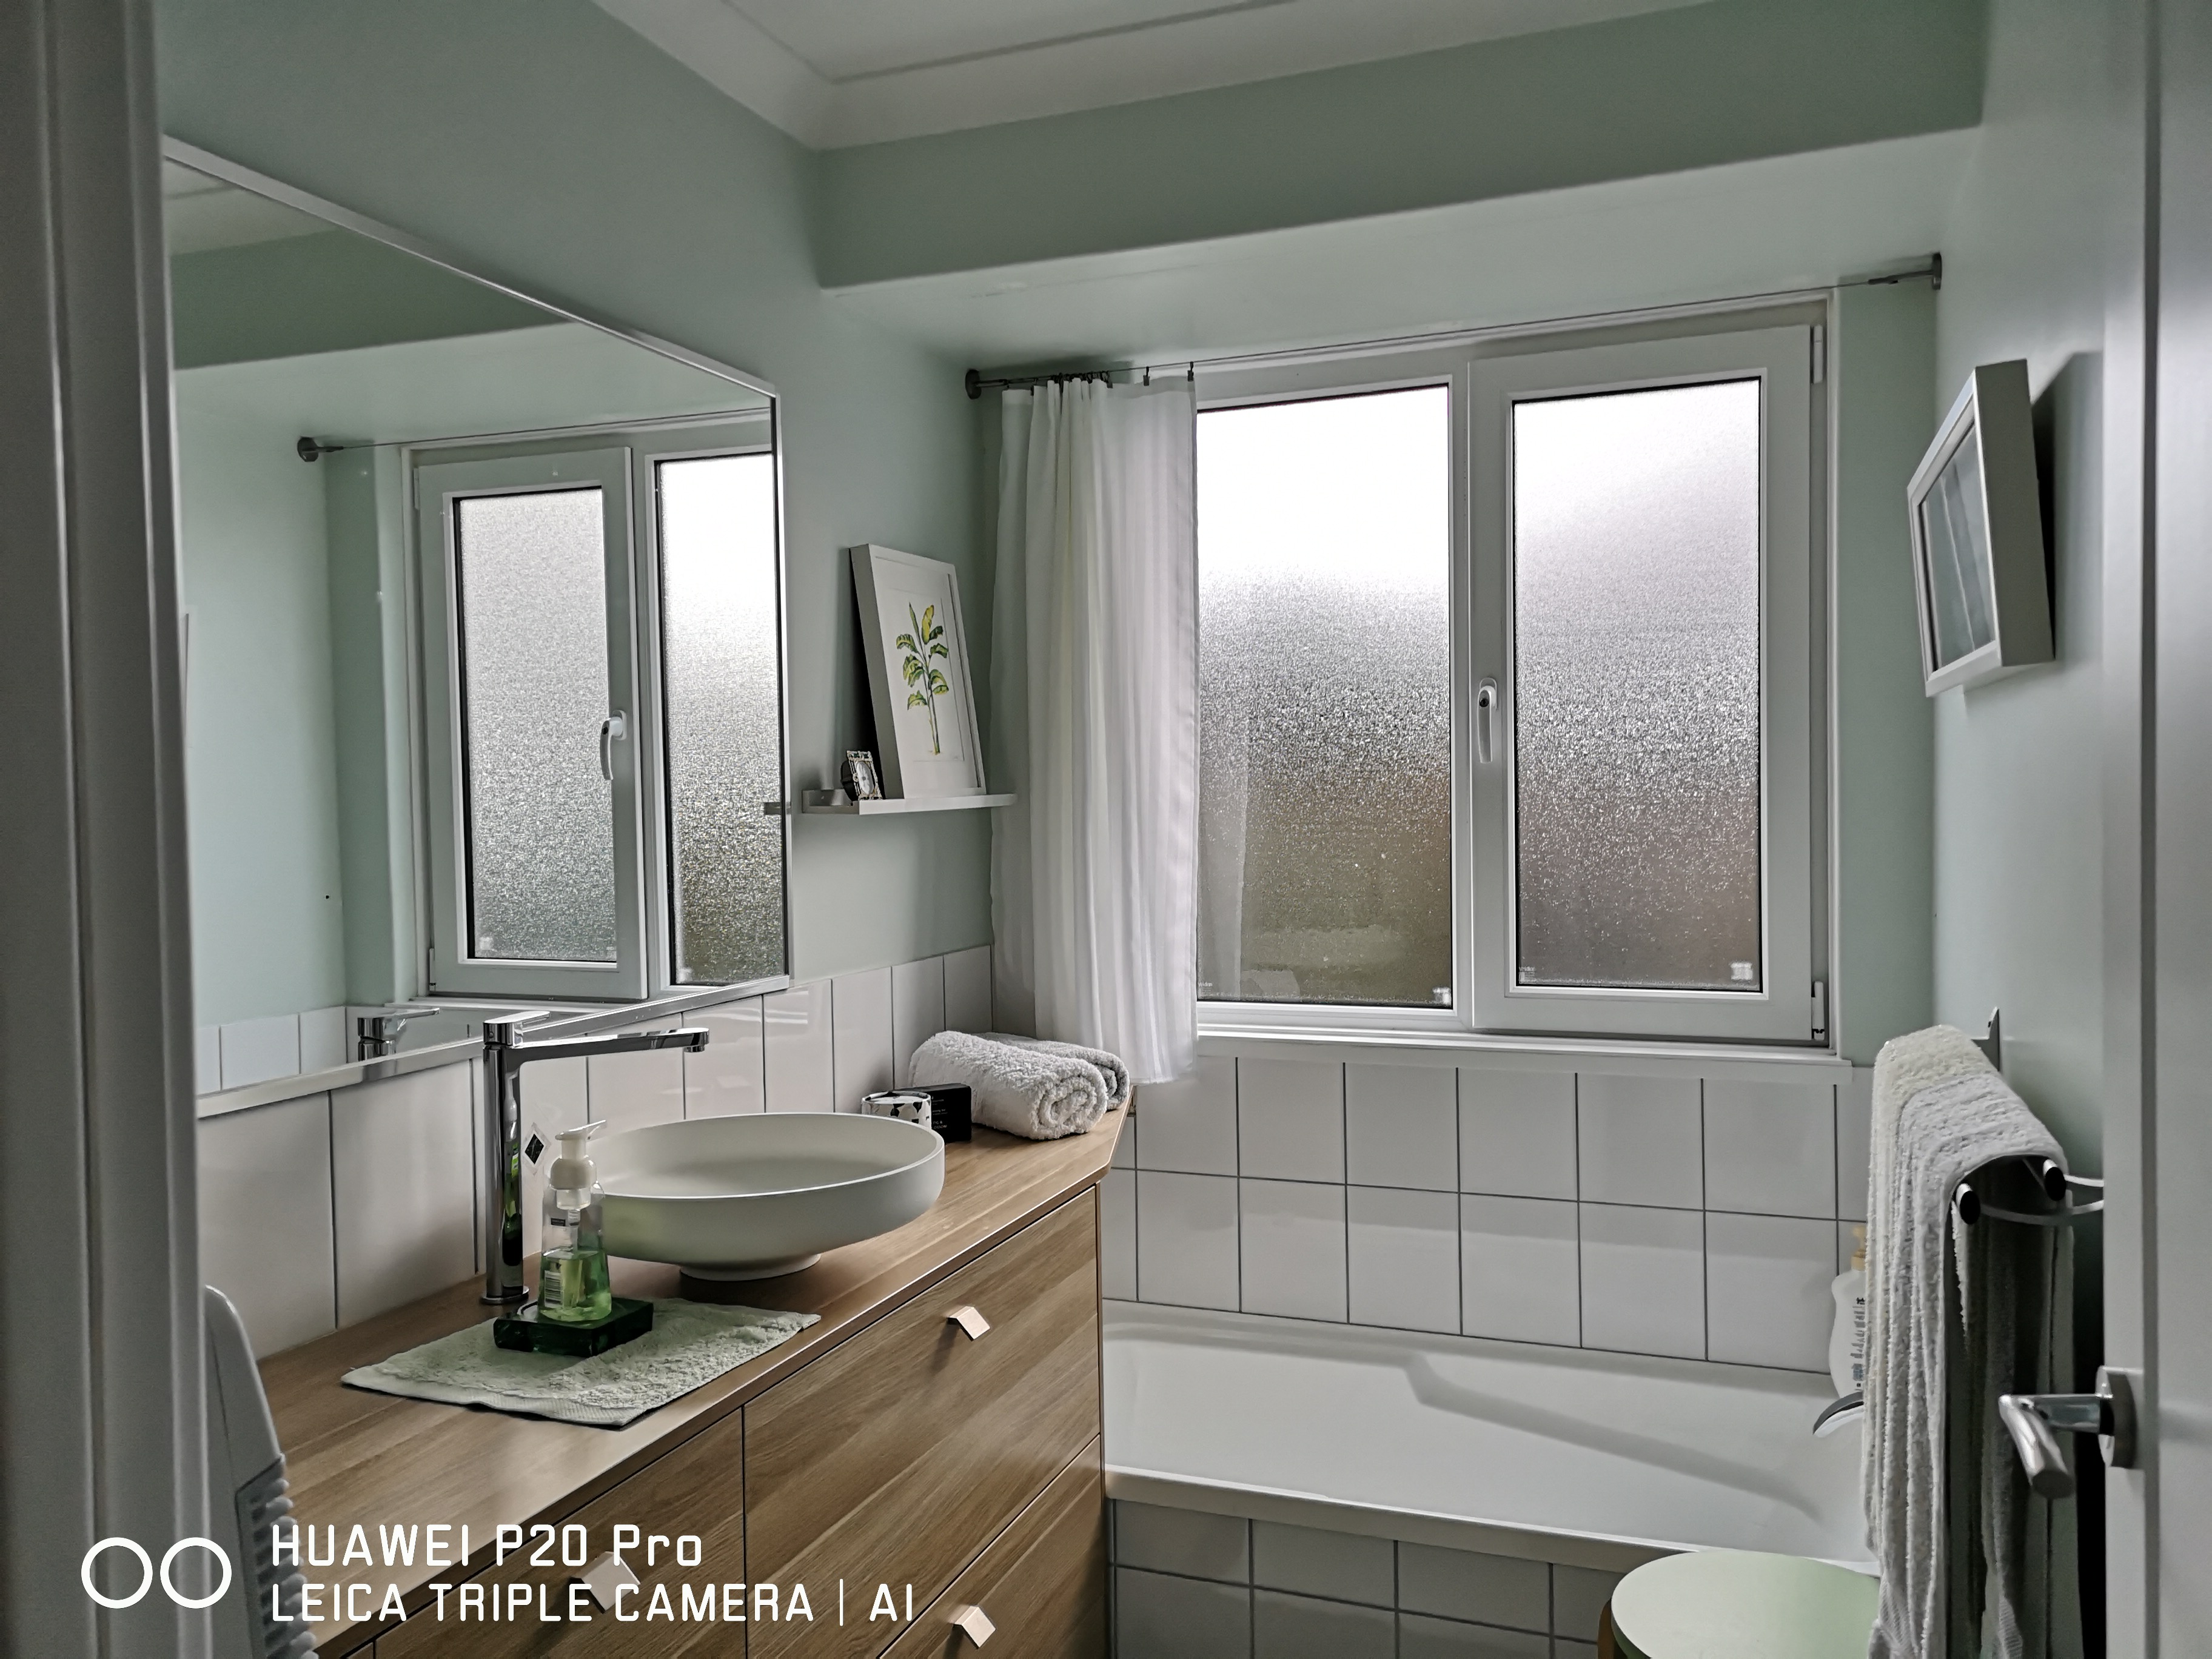 neuplanung-bad-und-schlafzimmer-raumgroessen-noch-leicht-variabel-422623-2.jpg